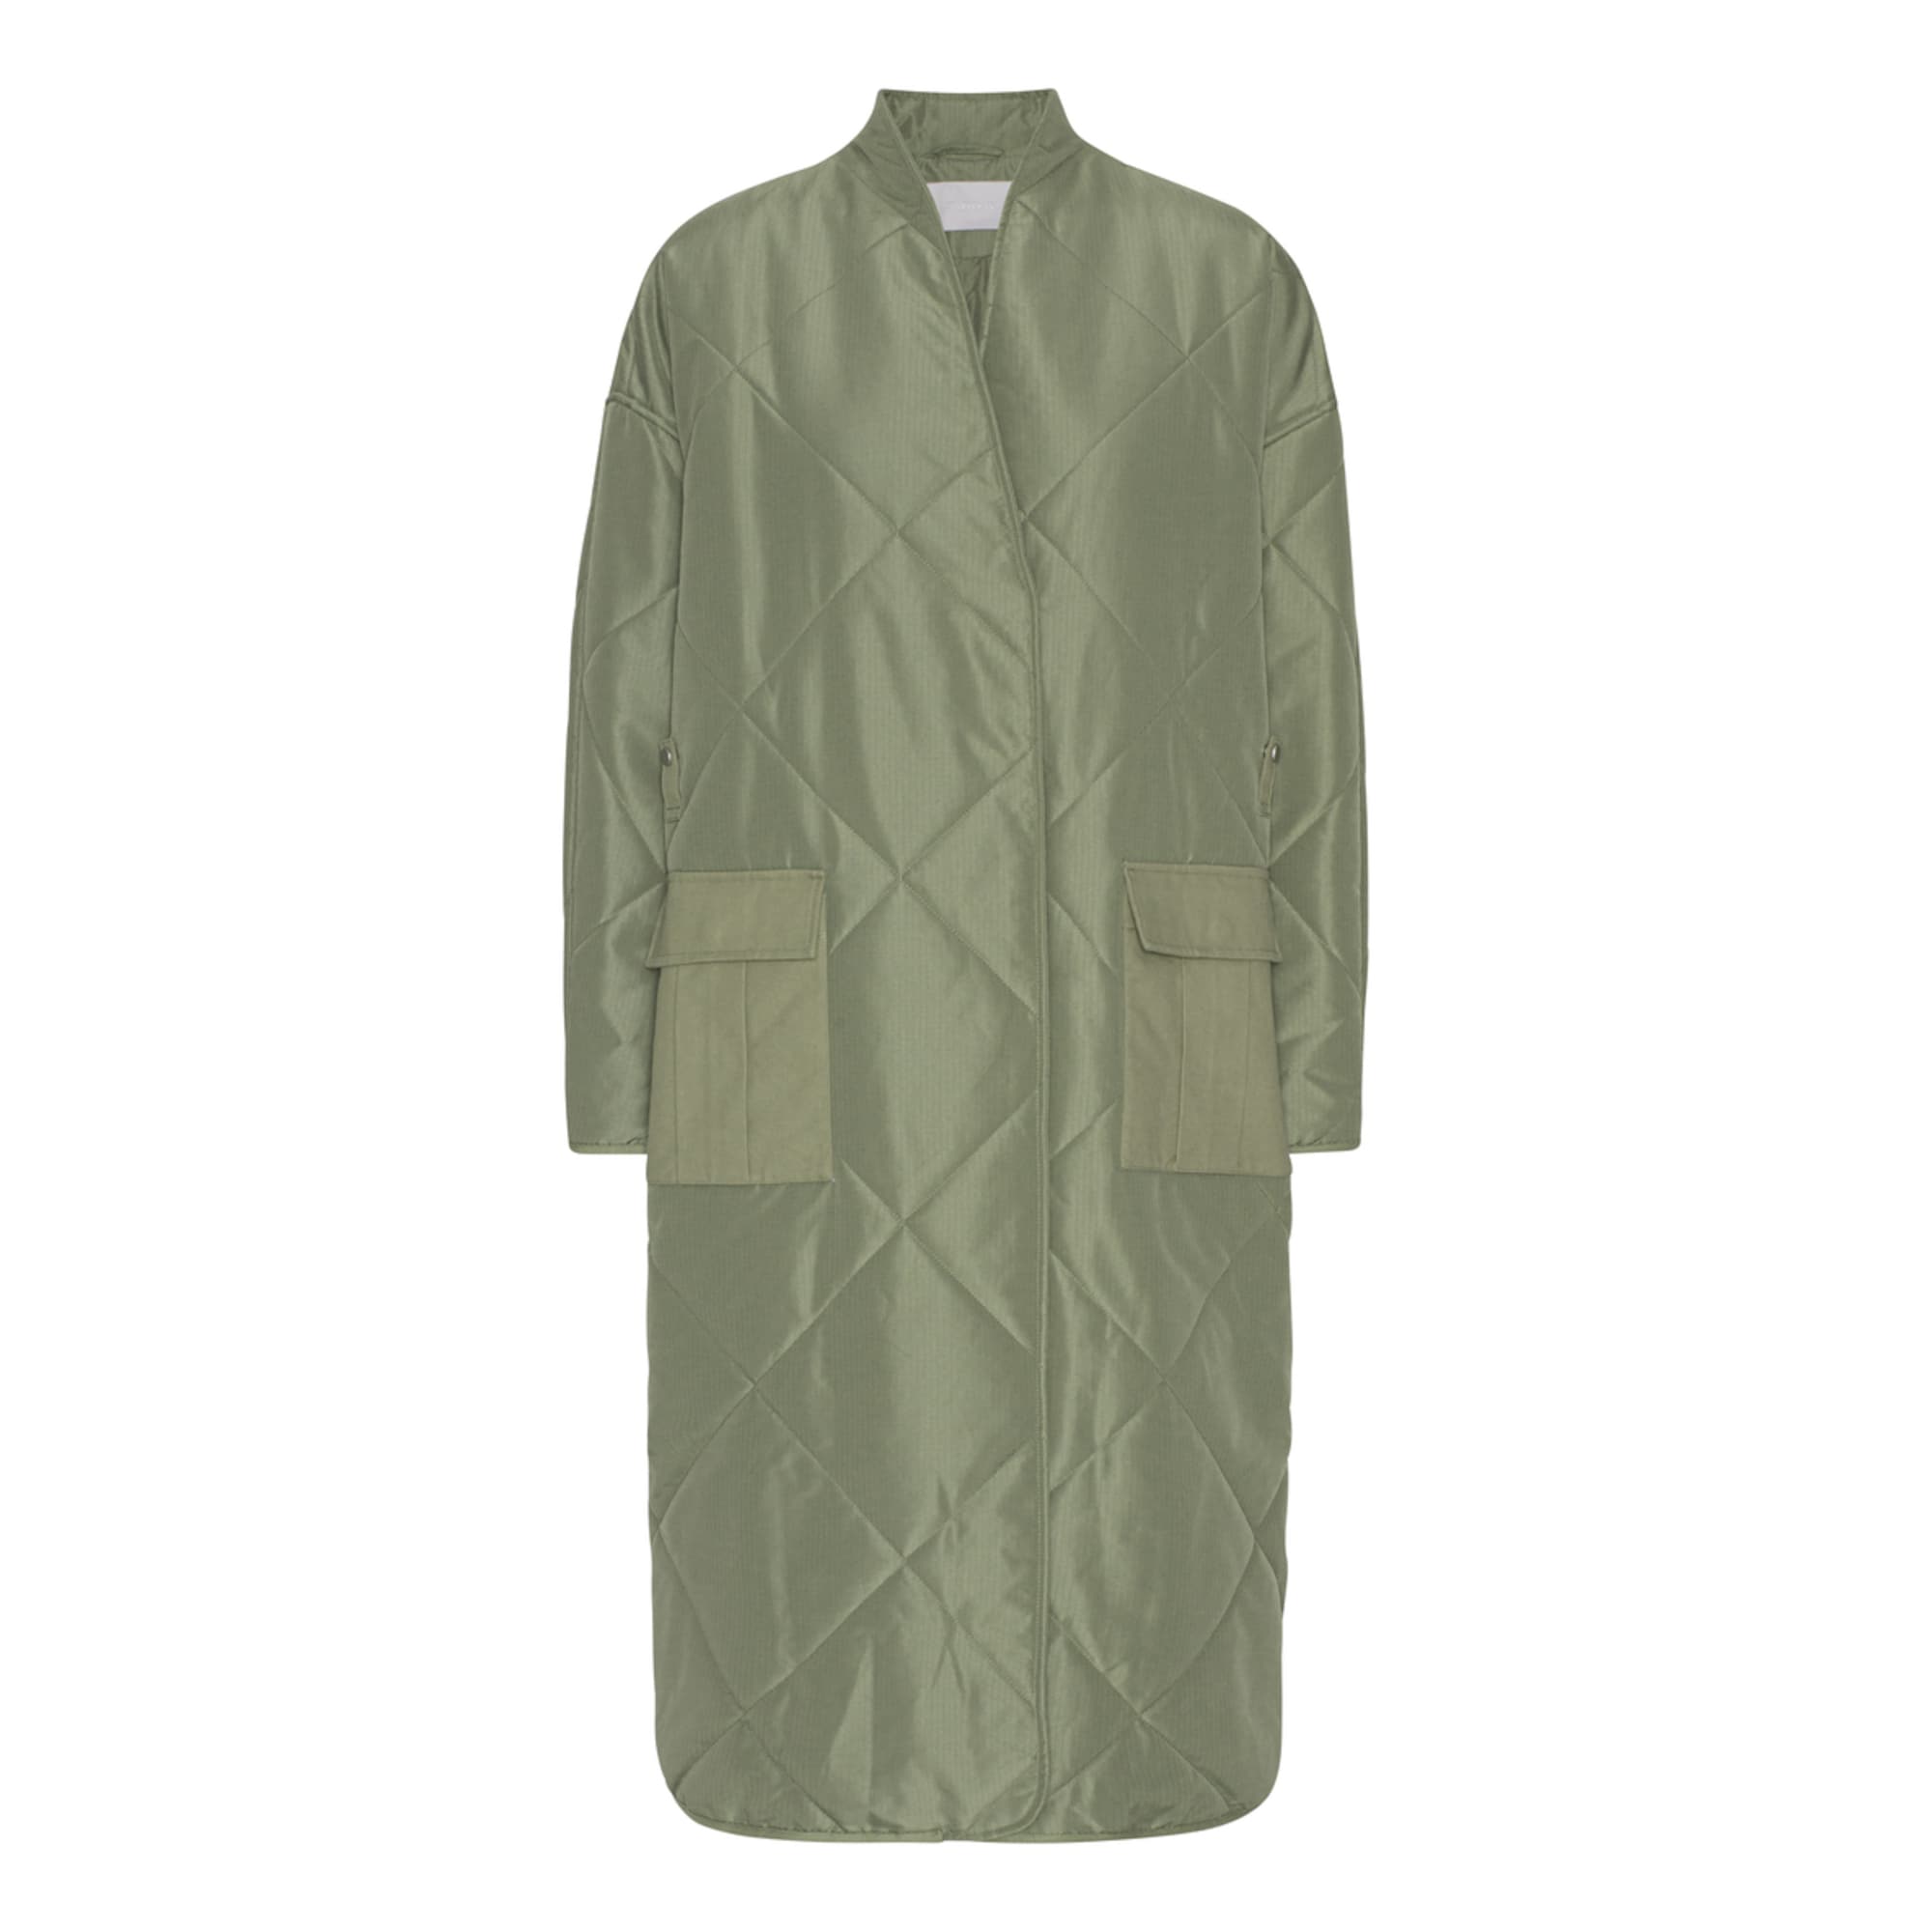 2NDDAY Demisezoninis paltas 'Castor' rusvai žalia / alyvuogių spalva